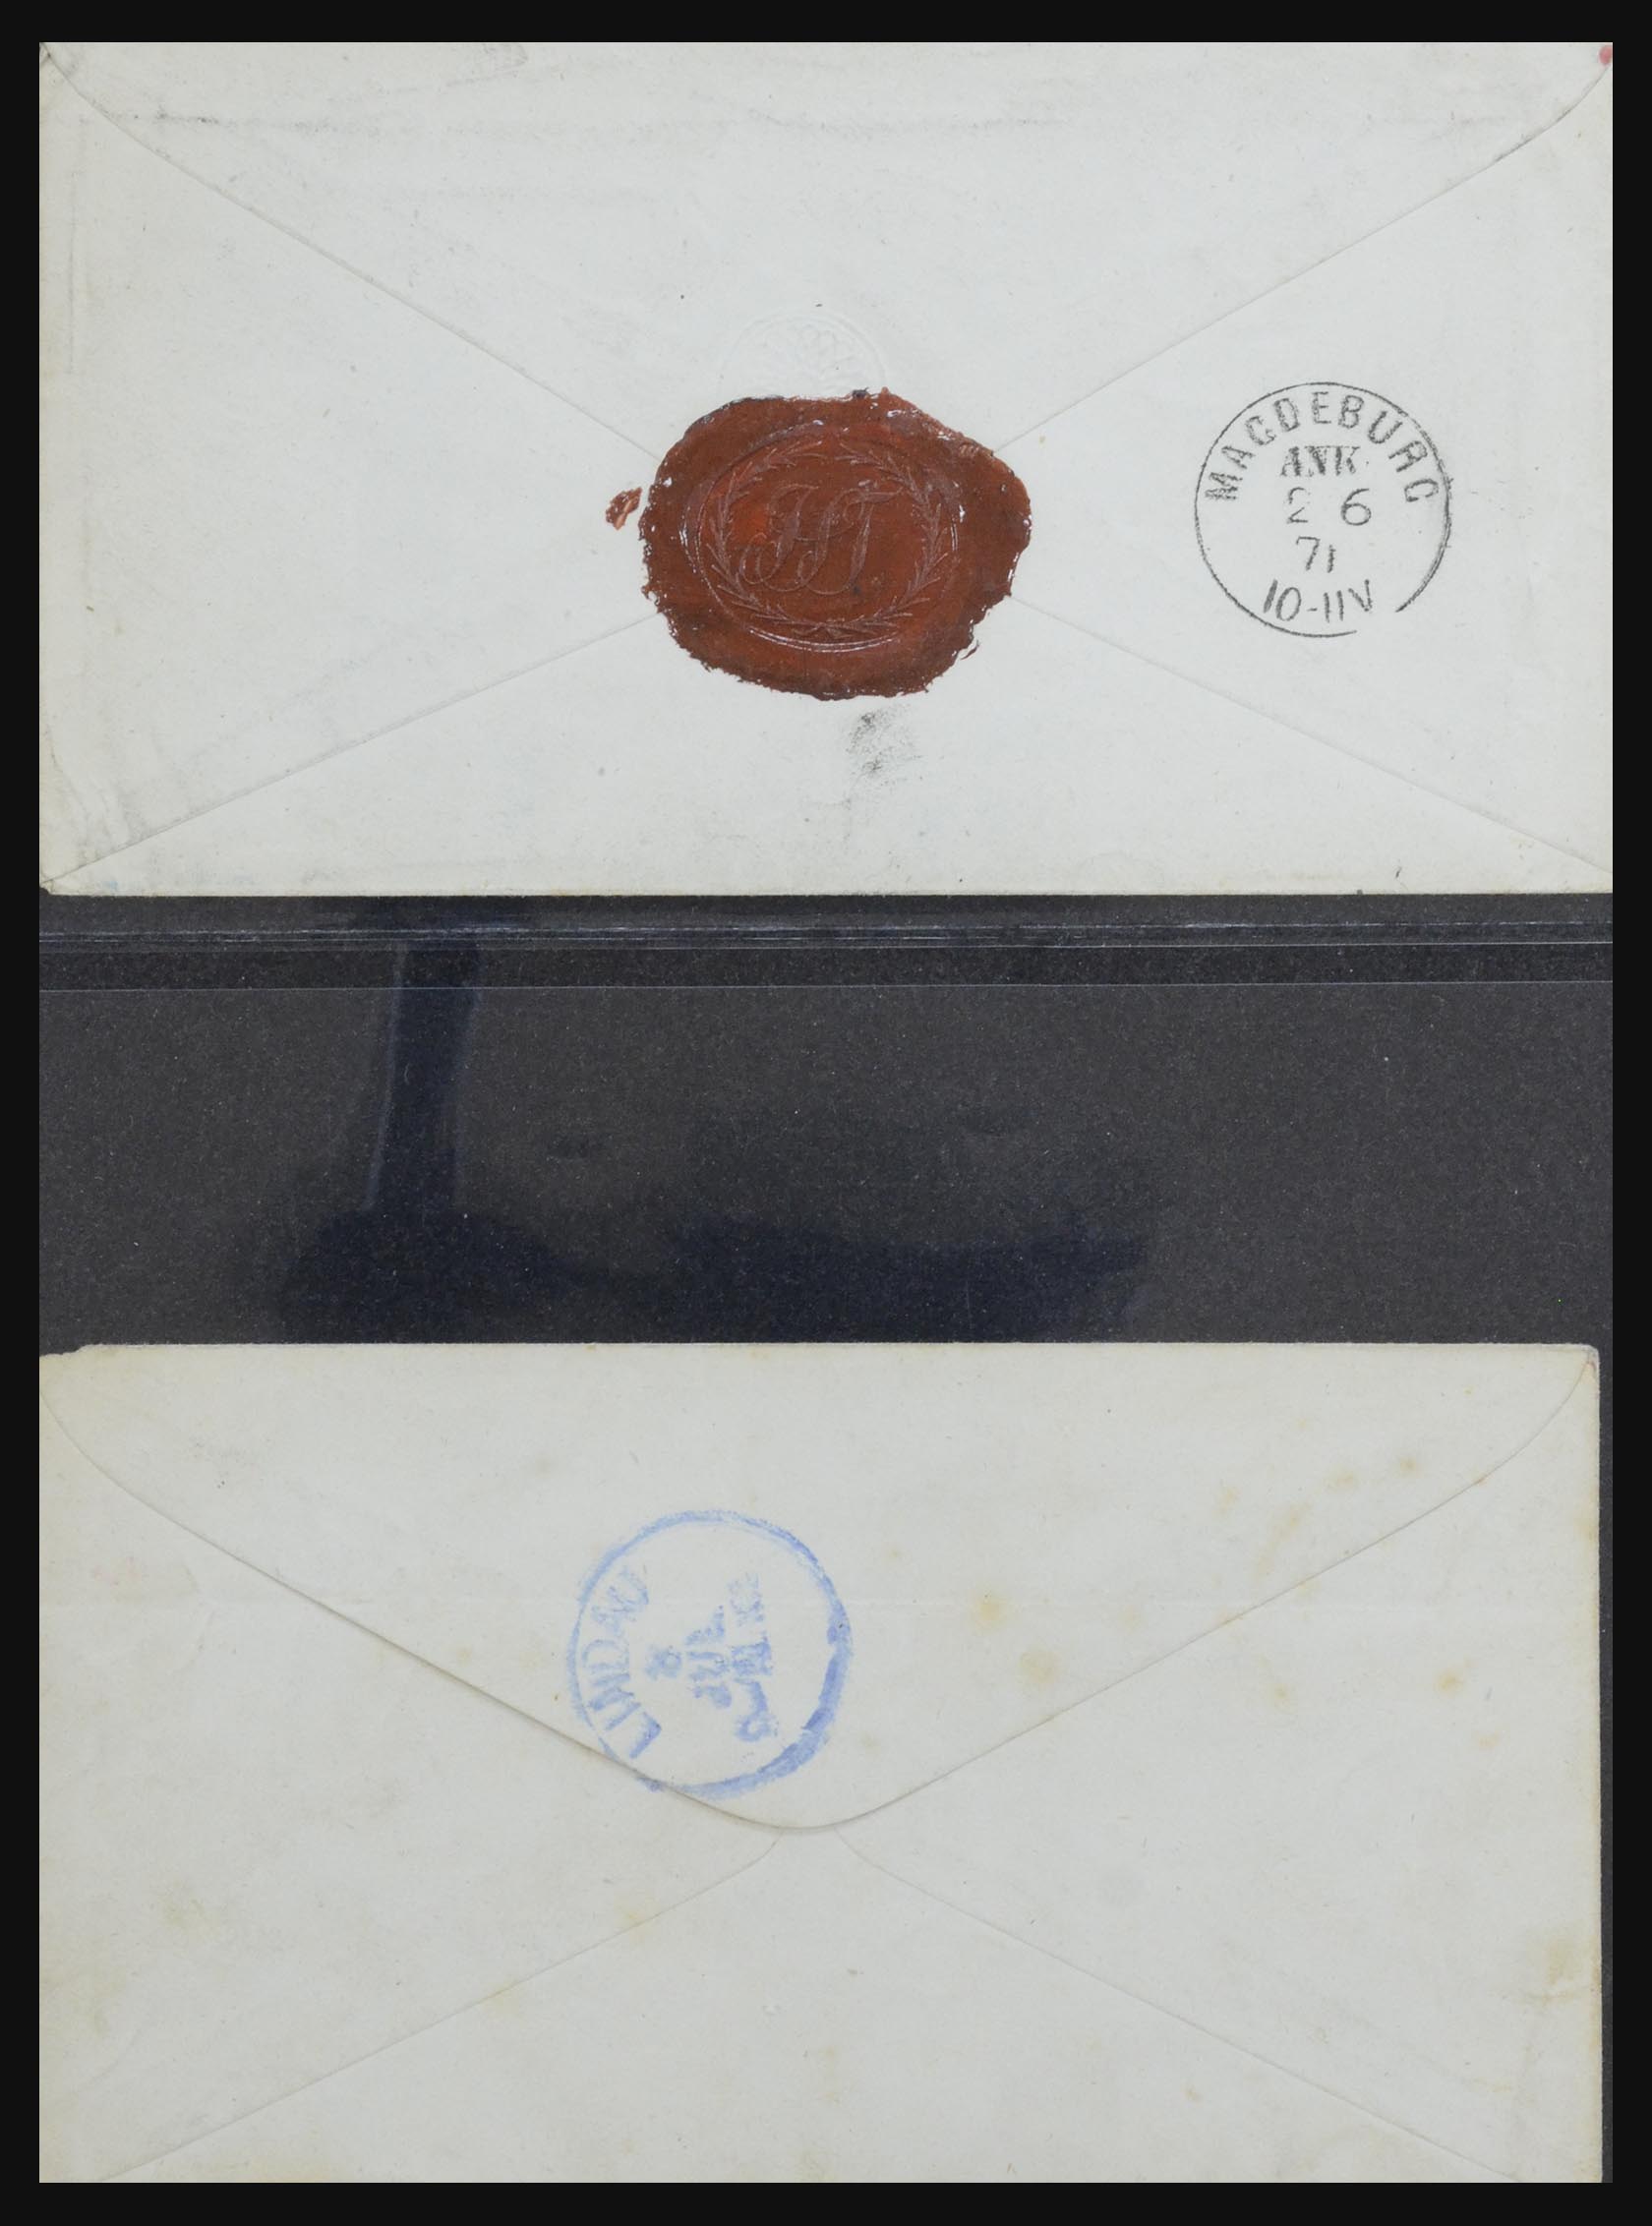 32254 0130 - 32254 Oostenrijk brieven vanaf 1800.